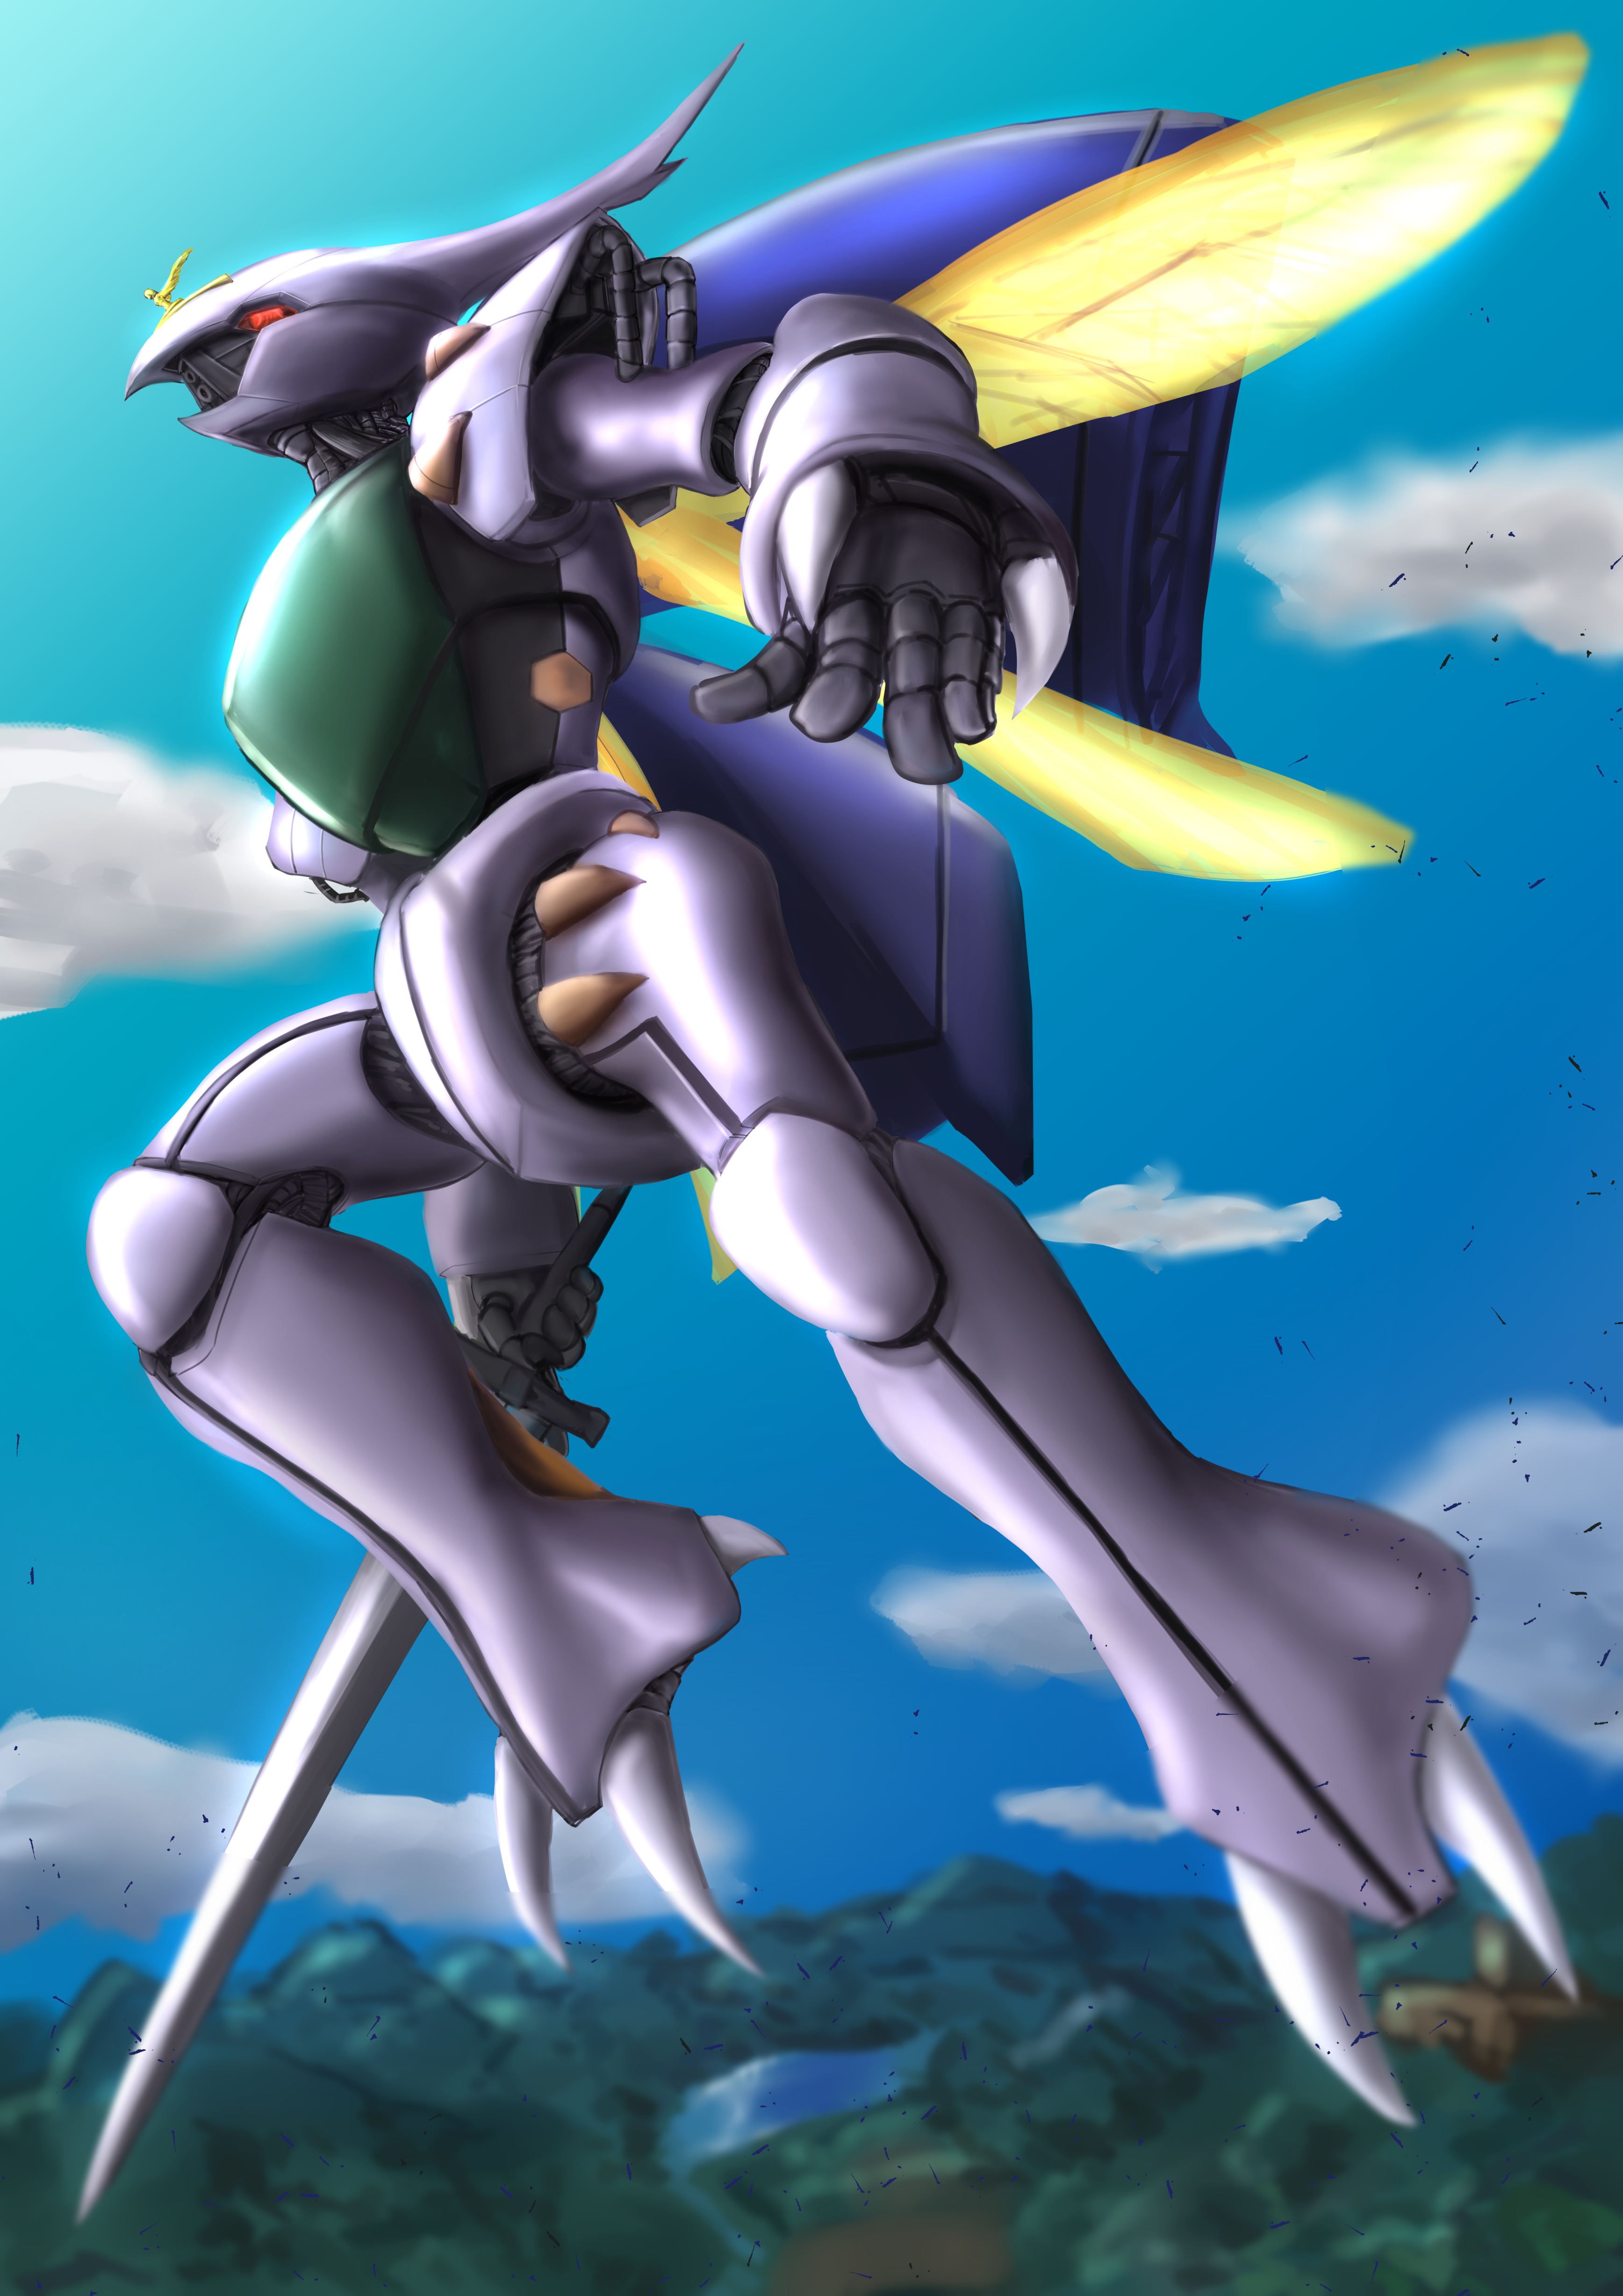 Anime 3472x4911 anime mechs Aura Battler Dunbine Dunbine Super Robot Taisen artwork digital art fan art